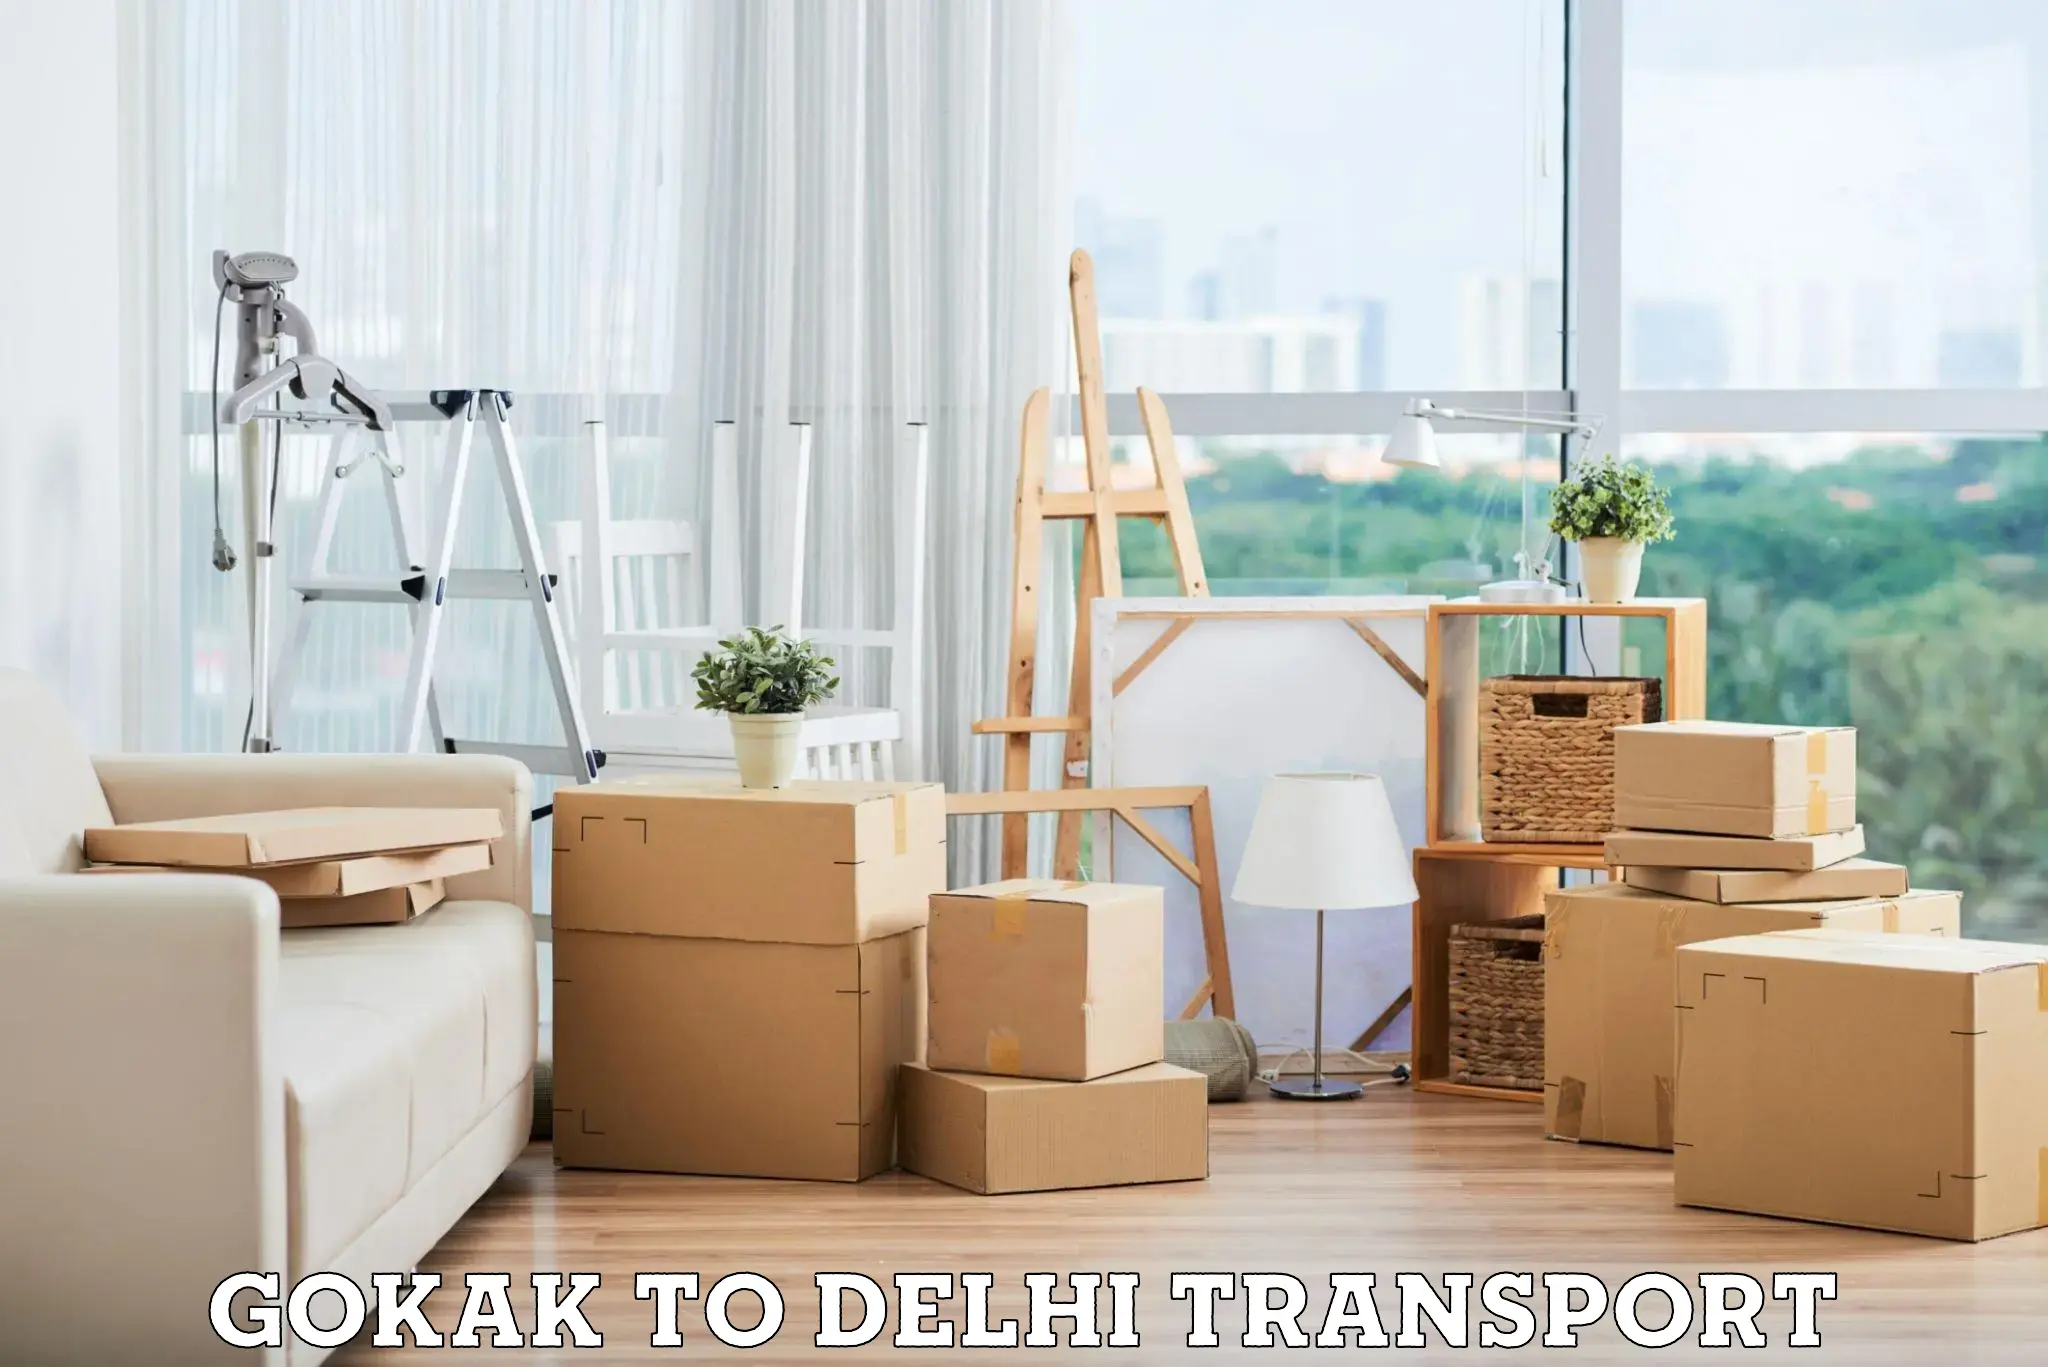 Parcel transport services Gokak to Jamia Millia Islamia New Delhi